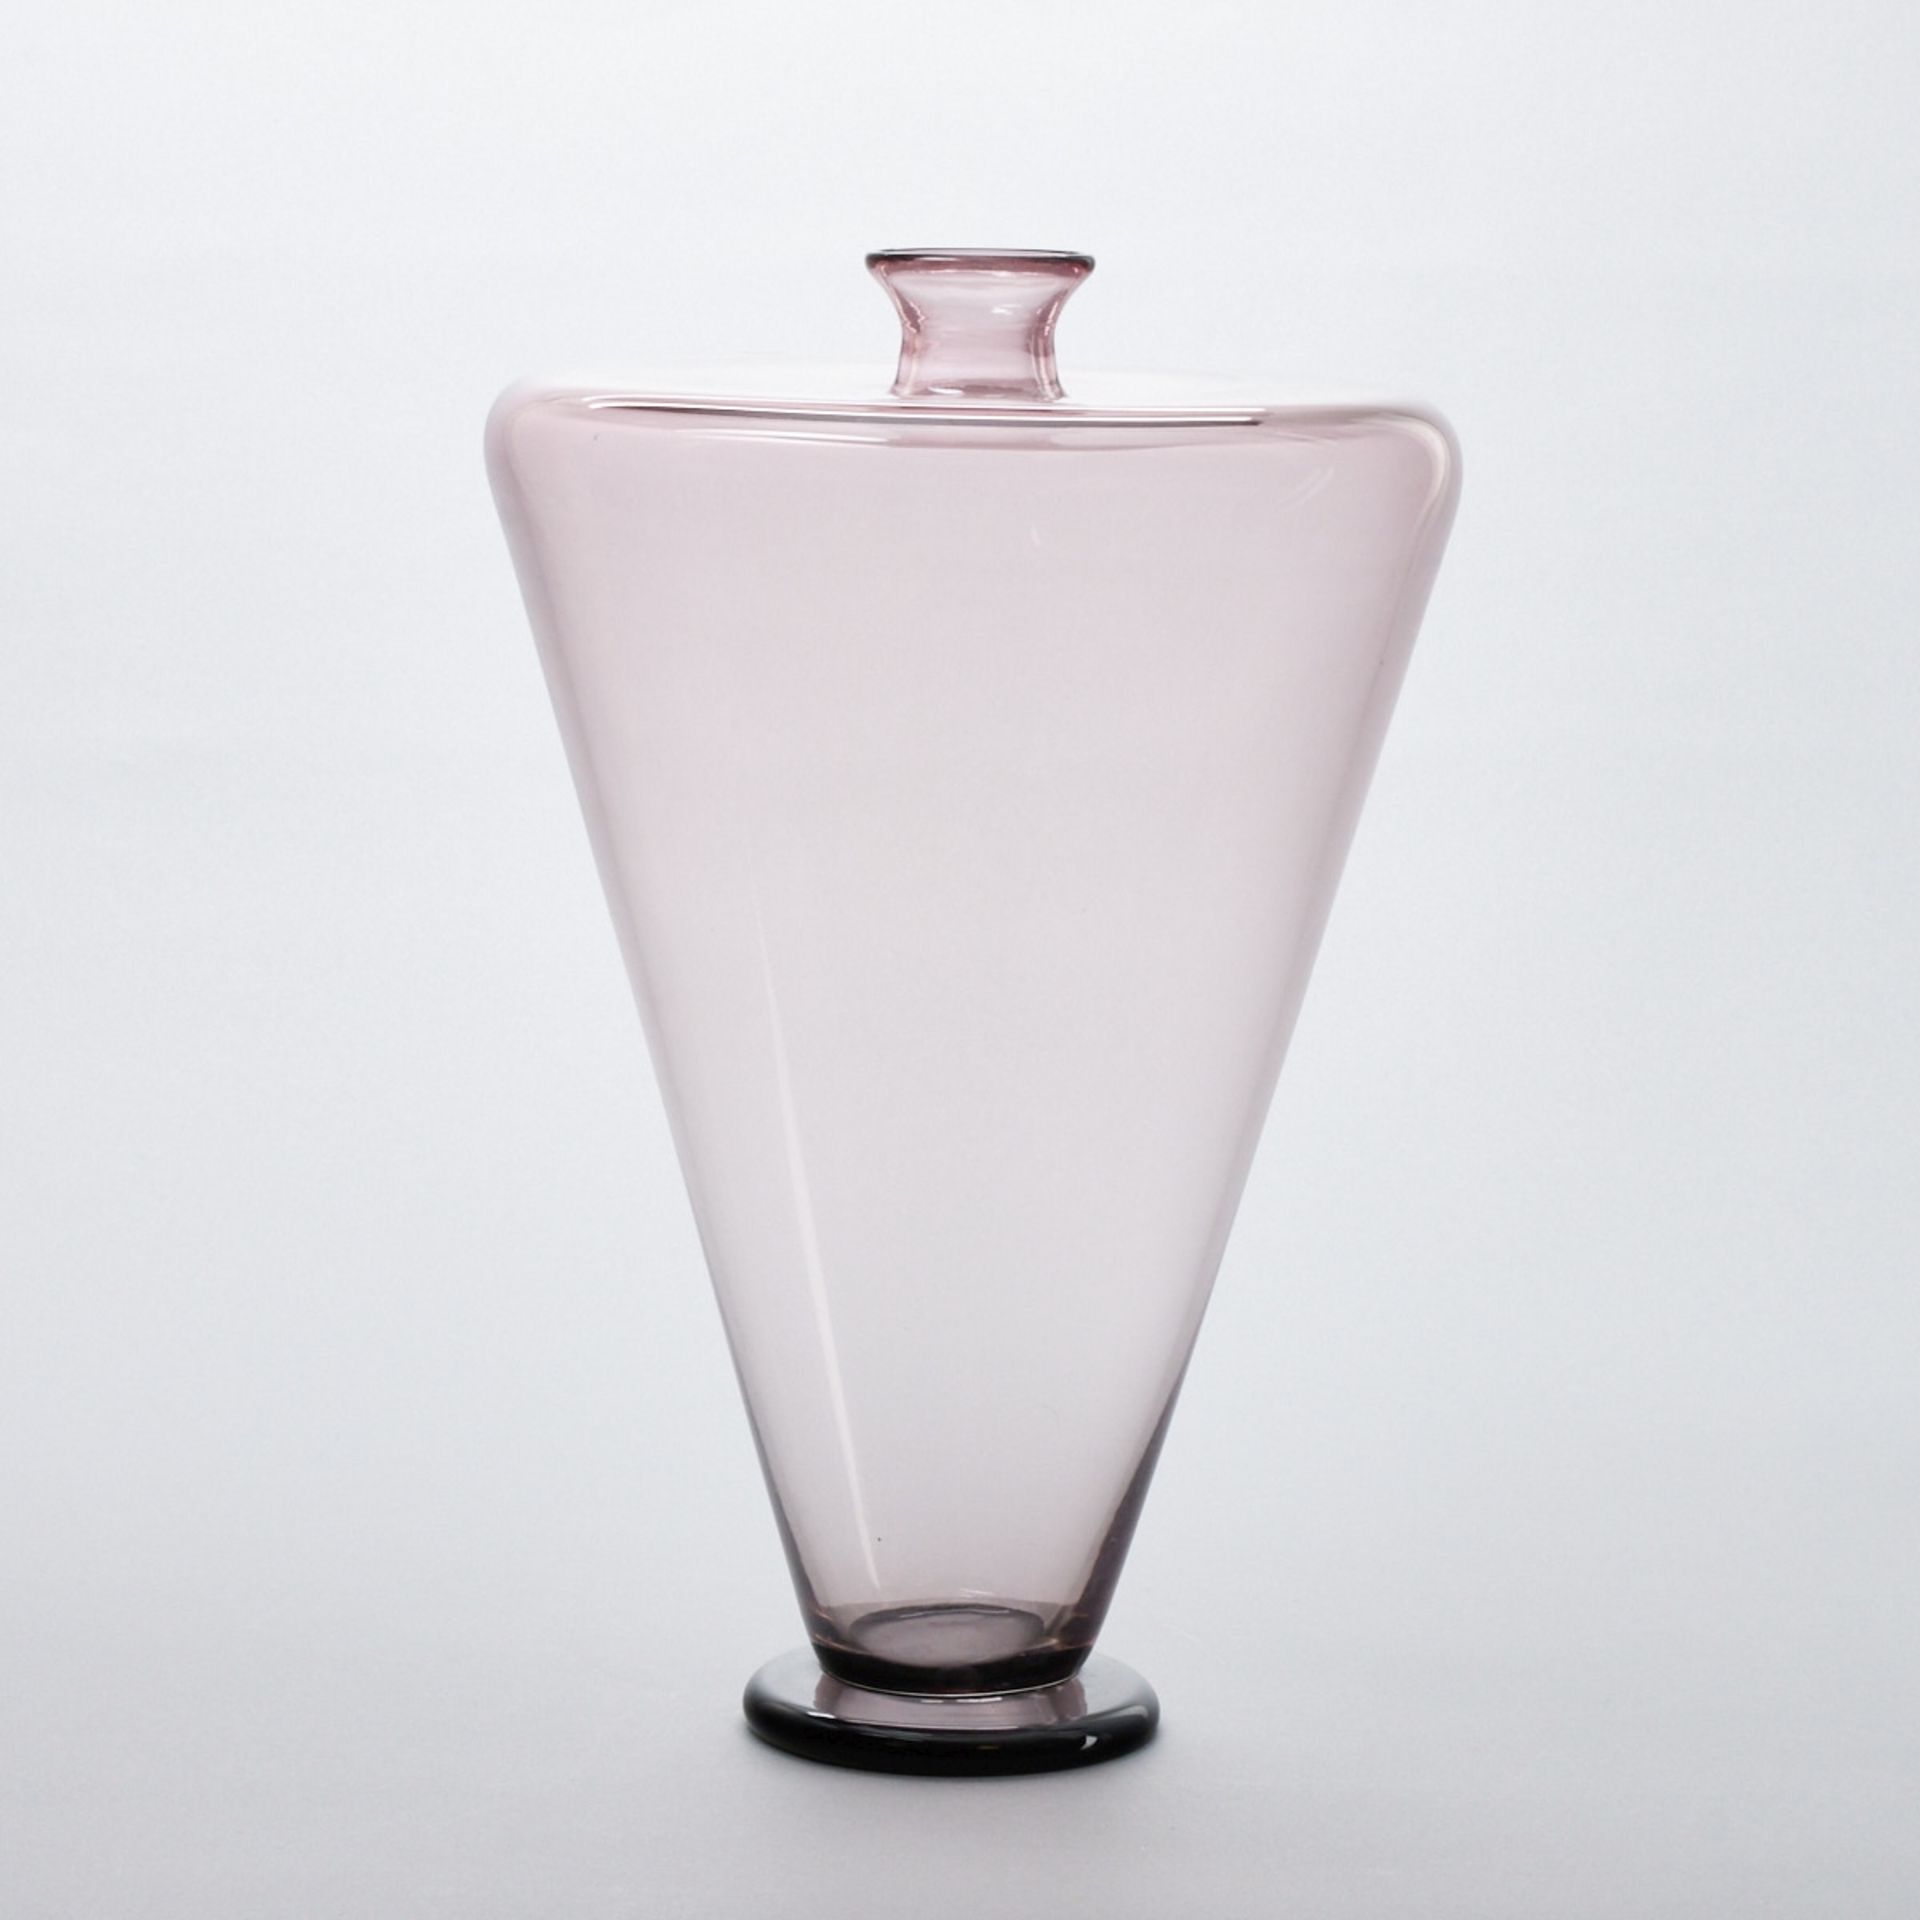 Vase mit Deckel. Vetreria Effe Due, Murano. - Bild 4 aus 5